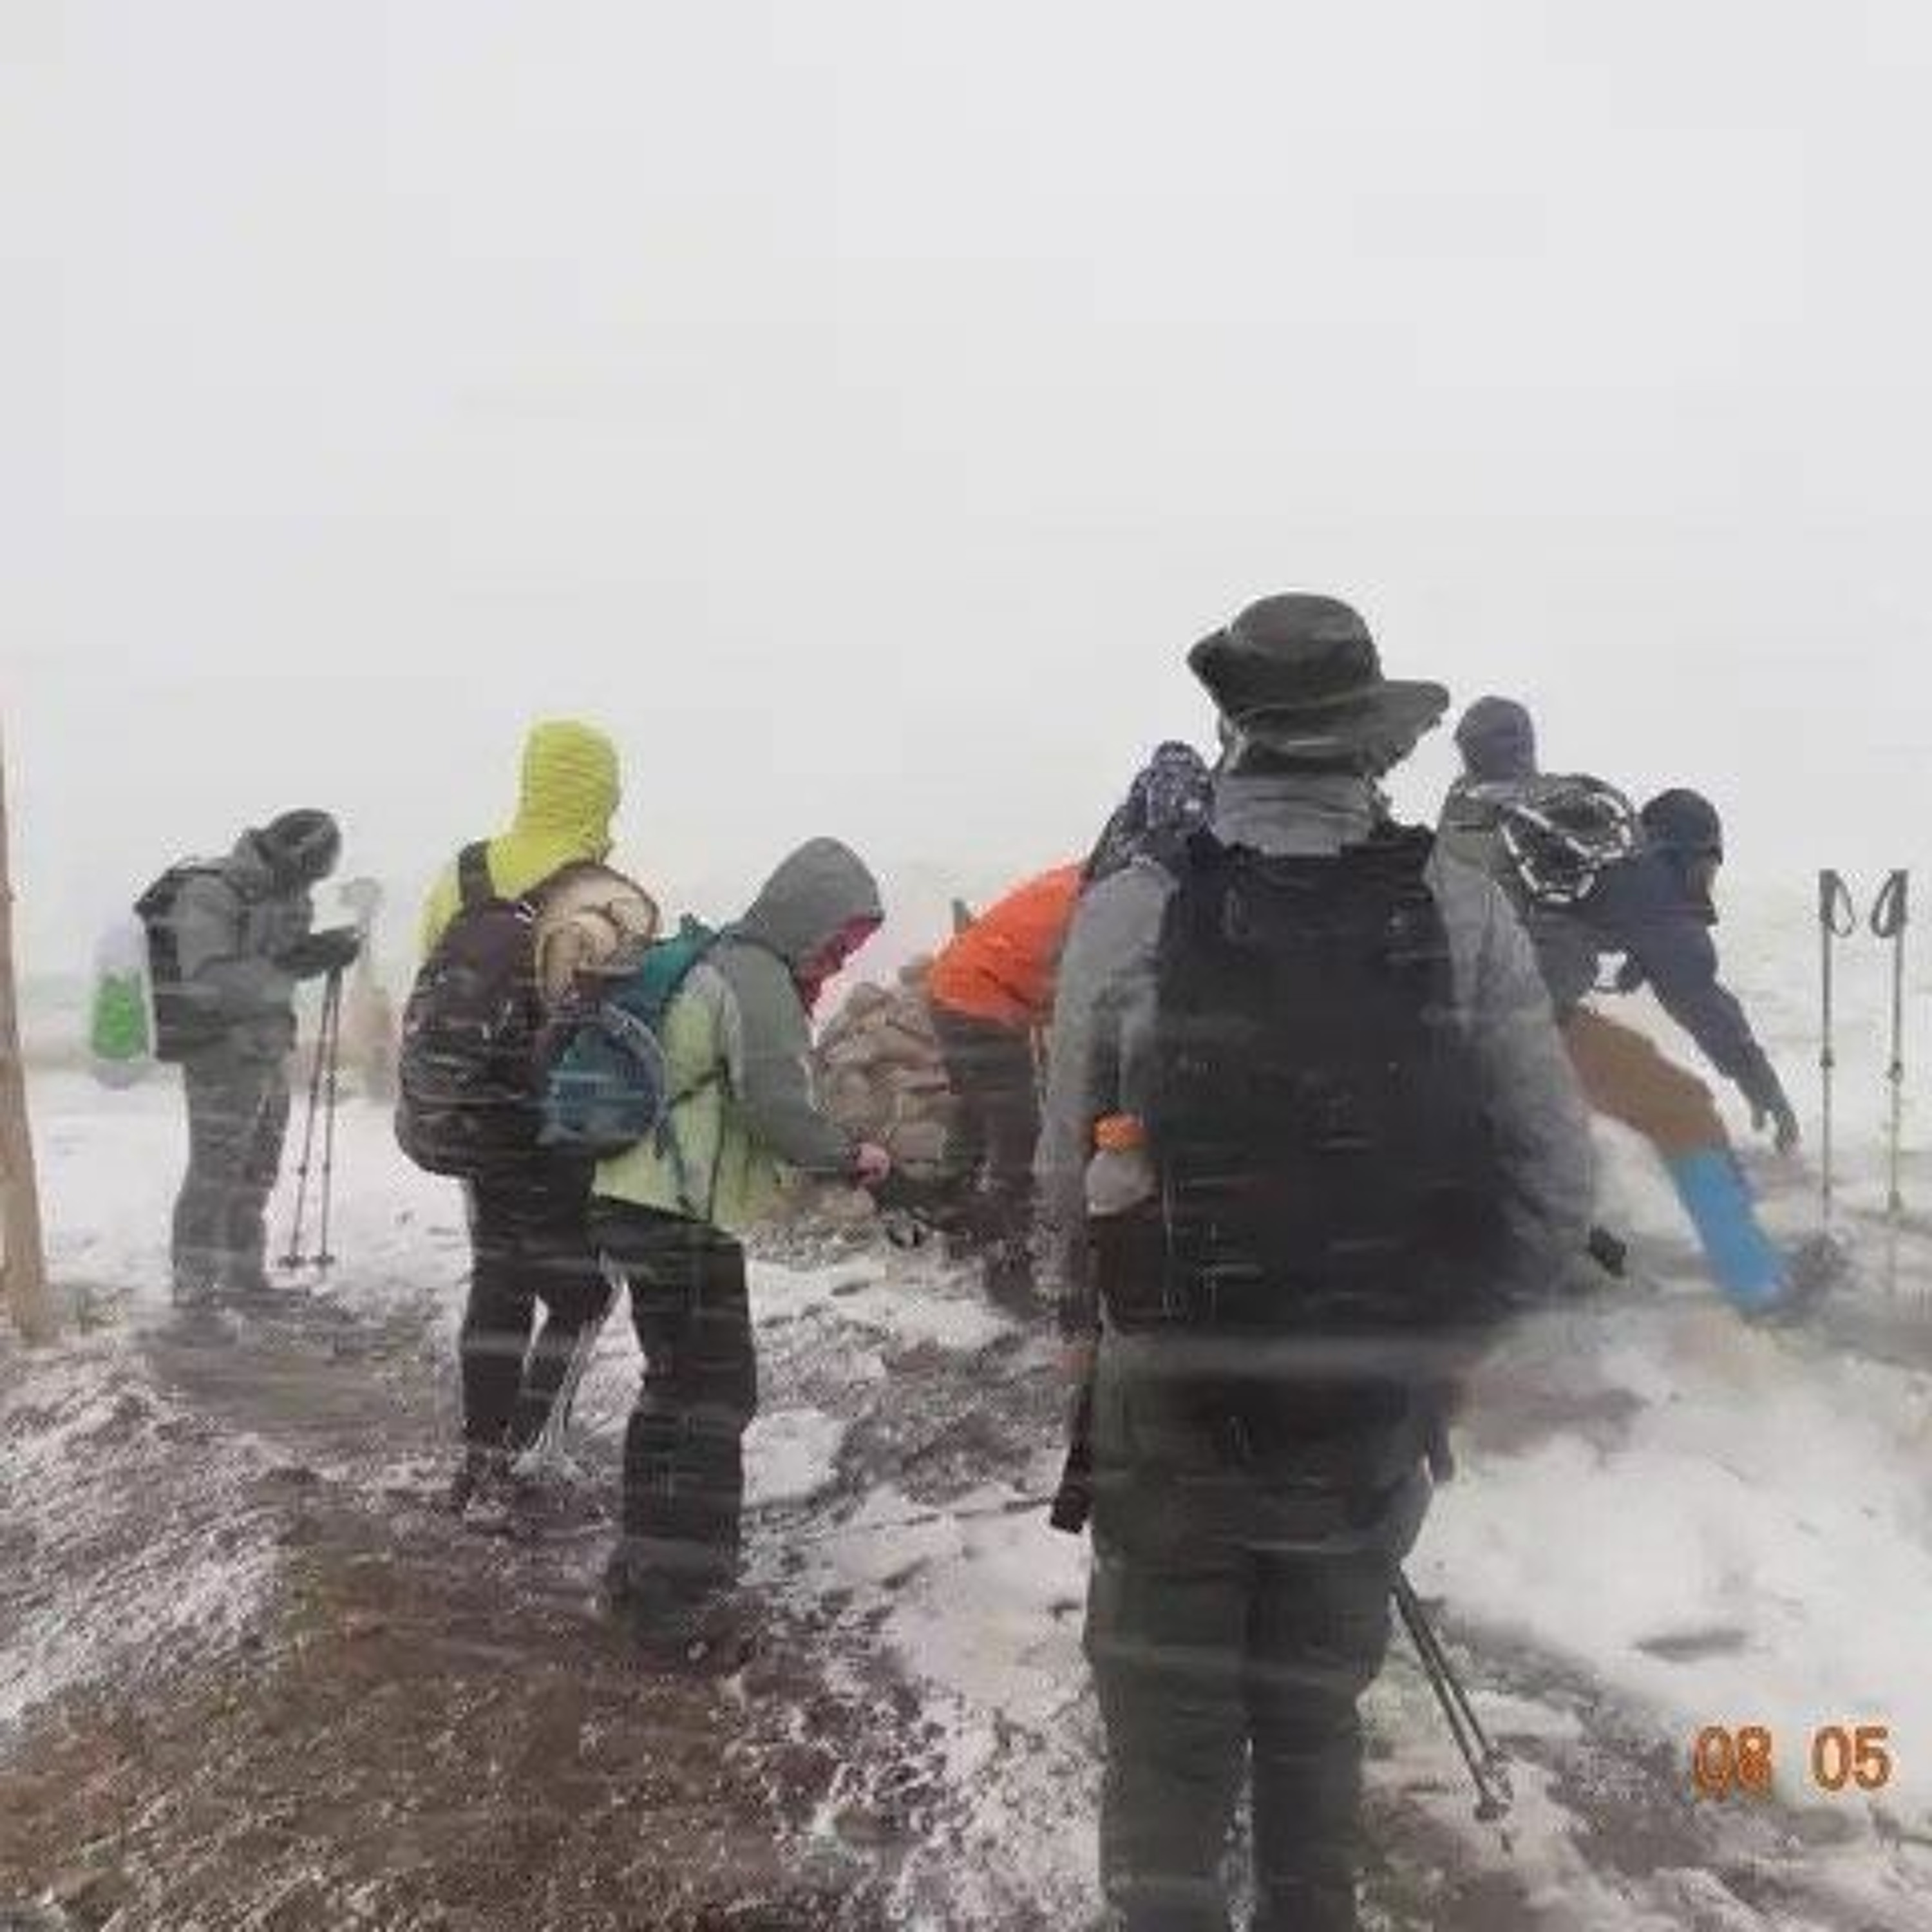 Ep 65 - Stormed off Mount Bierstadt, a Colorado Fourteener - Matt and Trevor